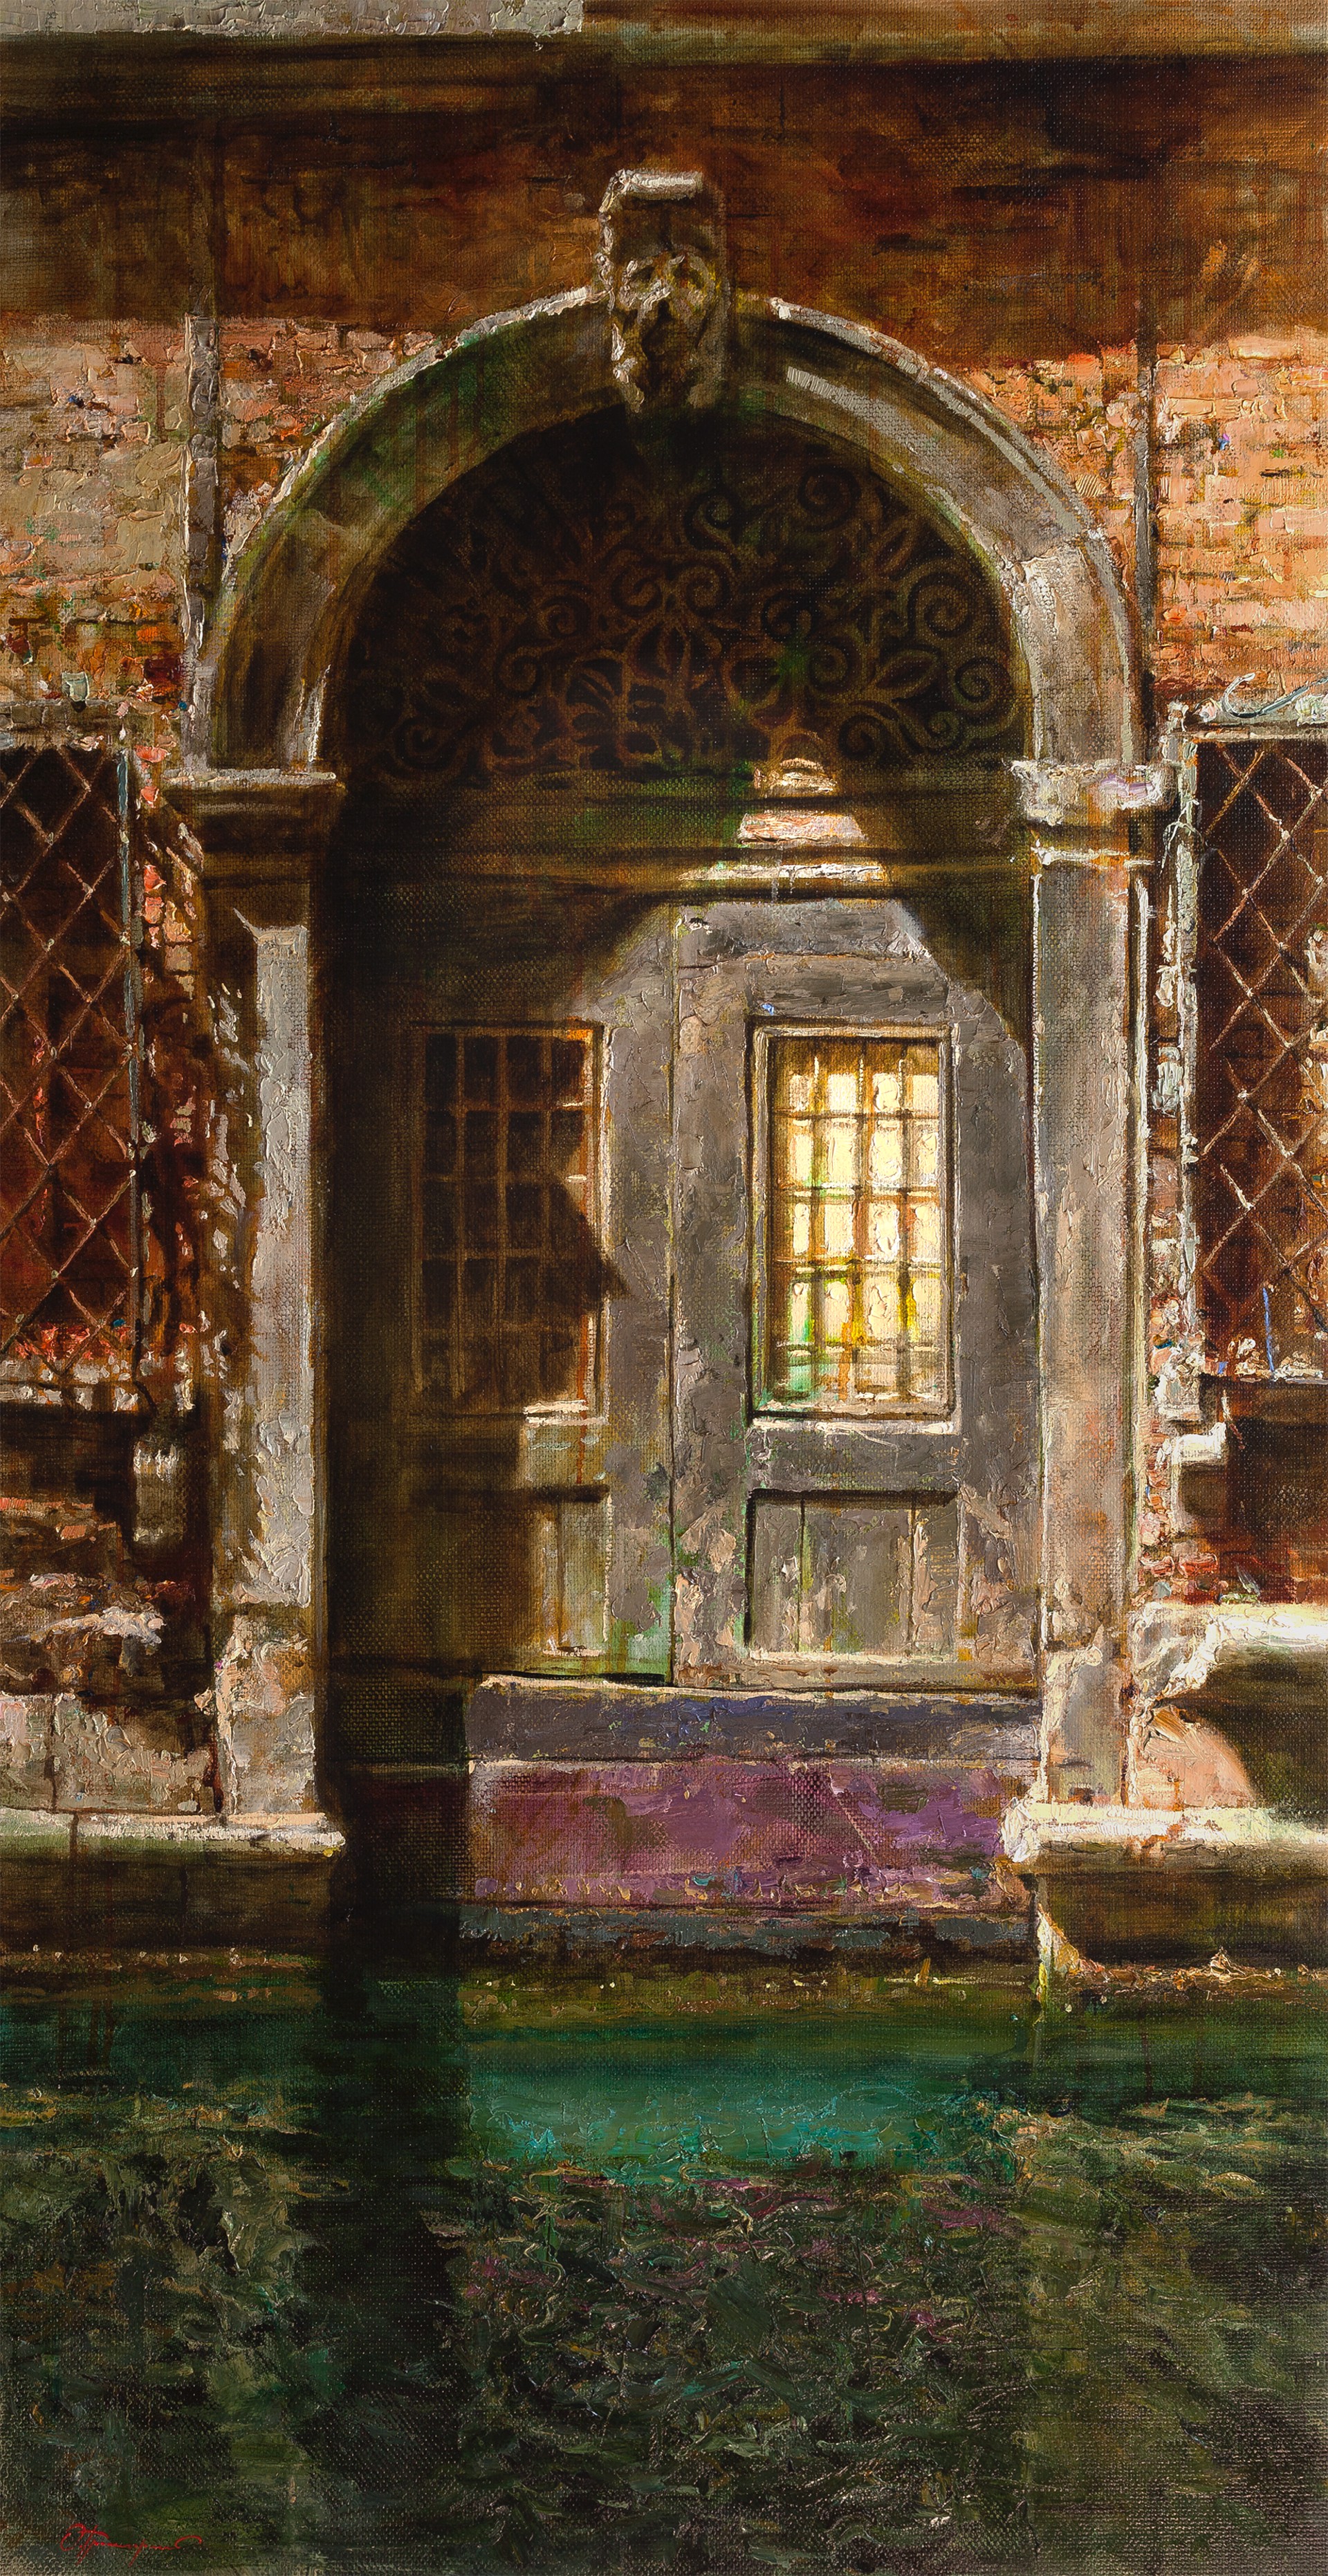 "Venetian Door" by Oleg Trofimov